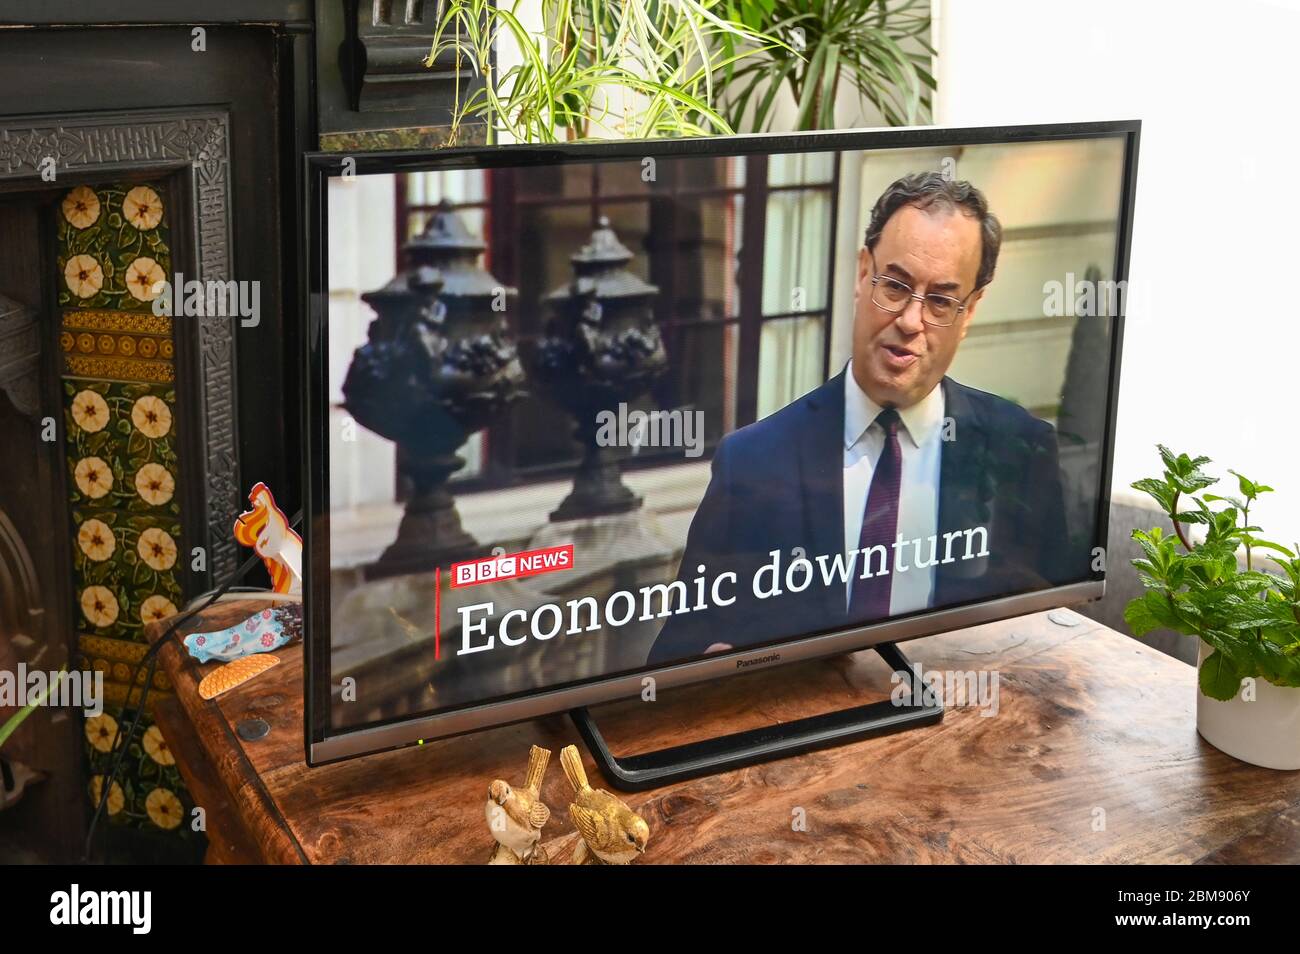 Andrew Bailey, Gouverneur der Bank of England, interviewte in BBC News über die finanziellen Aussichten mit Coronavirus. Bildunterschrift „Konjunkturabschwung“. Stockfoto